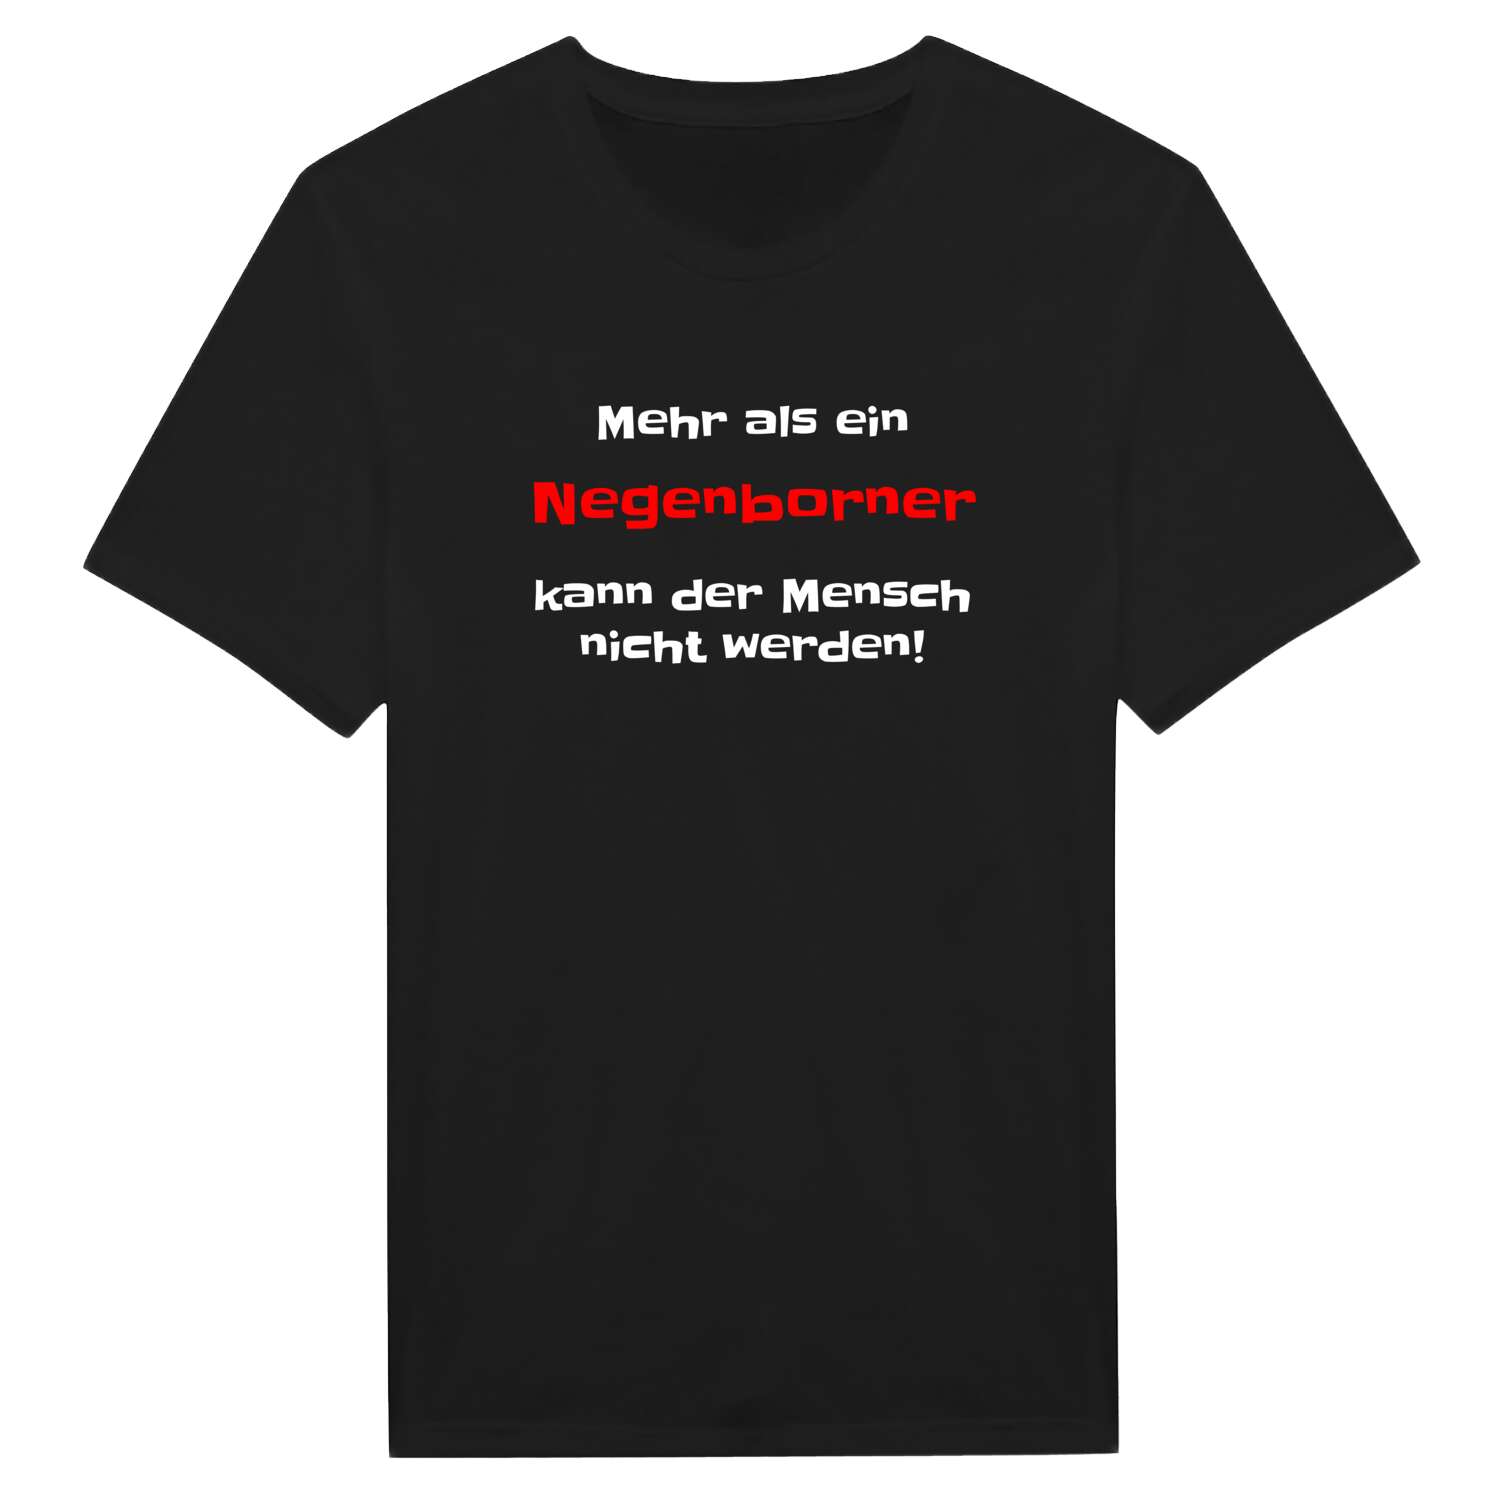 Negenborn T-Shirt »Mehr als ein«